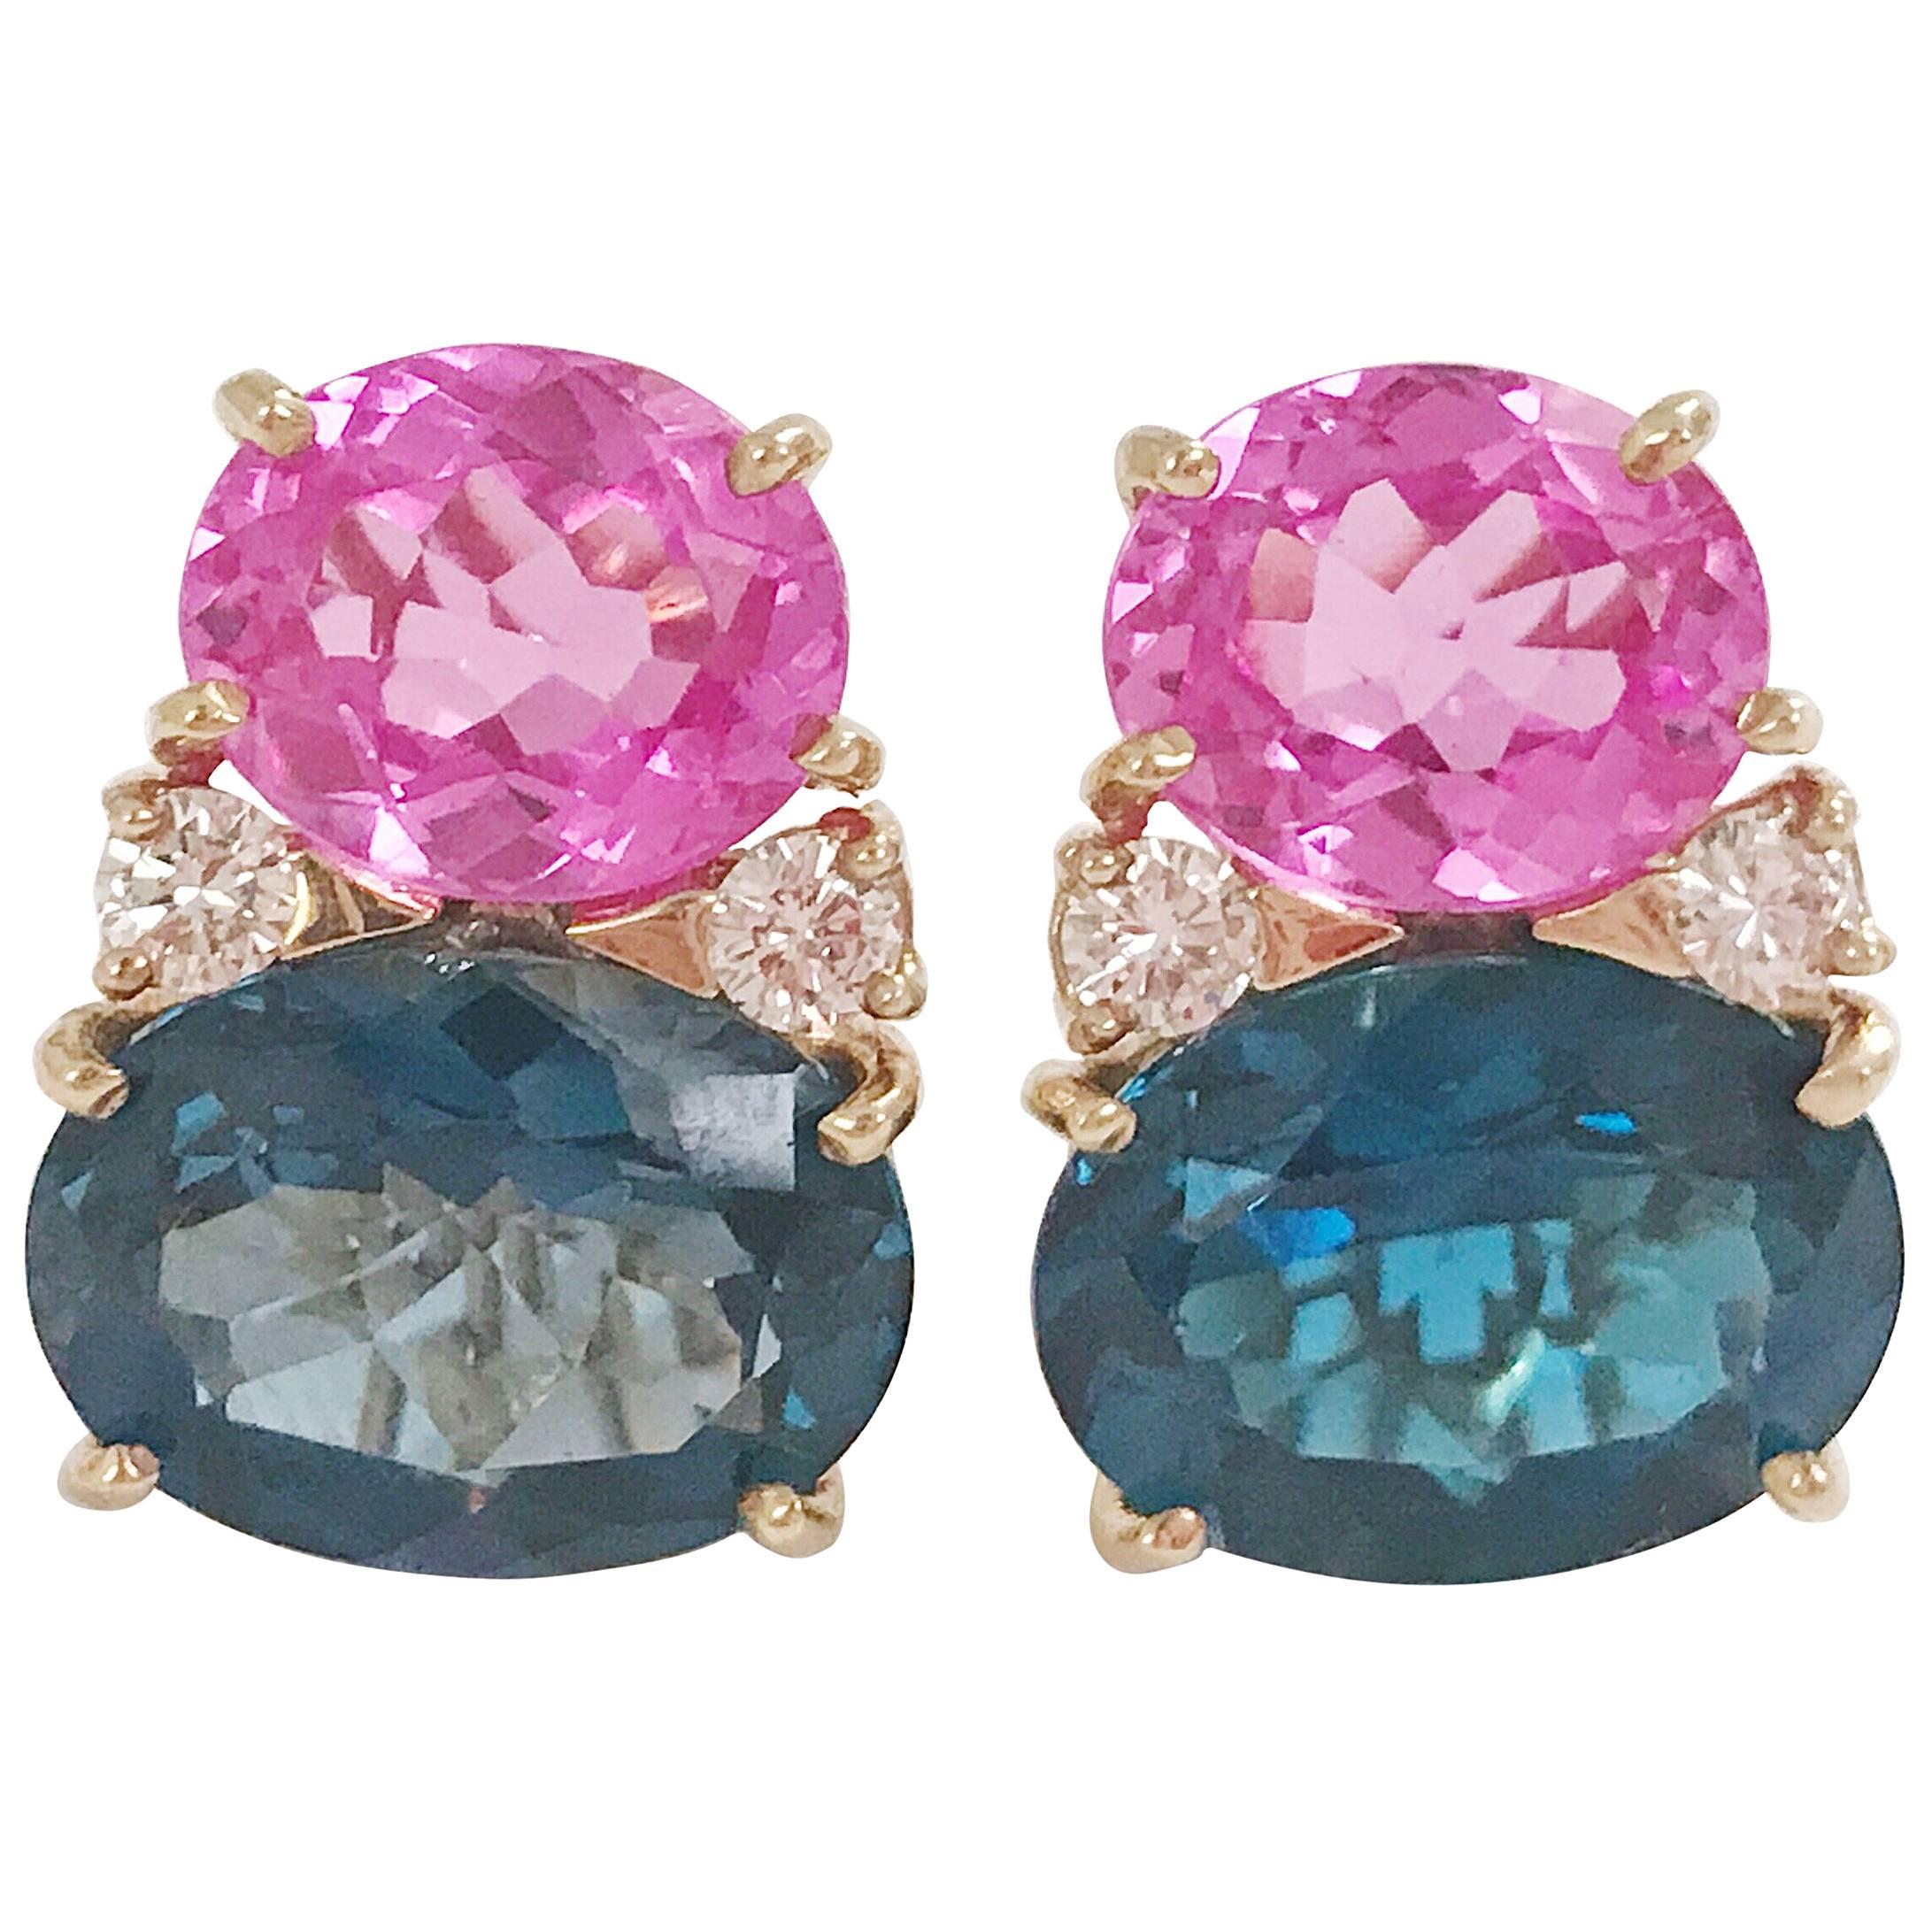 Große GUM DROP-Ohrringe mit heißem rosa und tiefblauem Topas und Diamanten